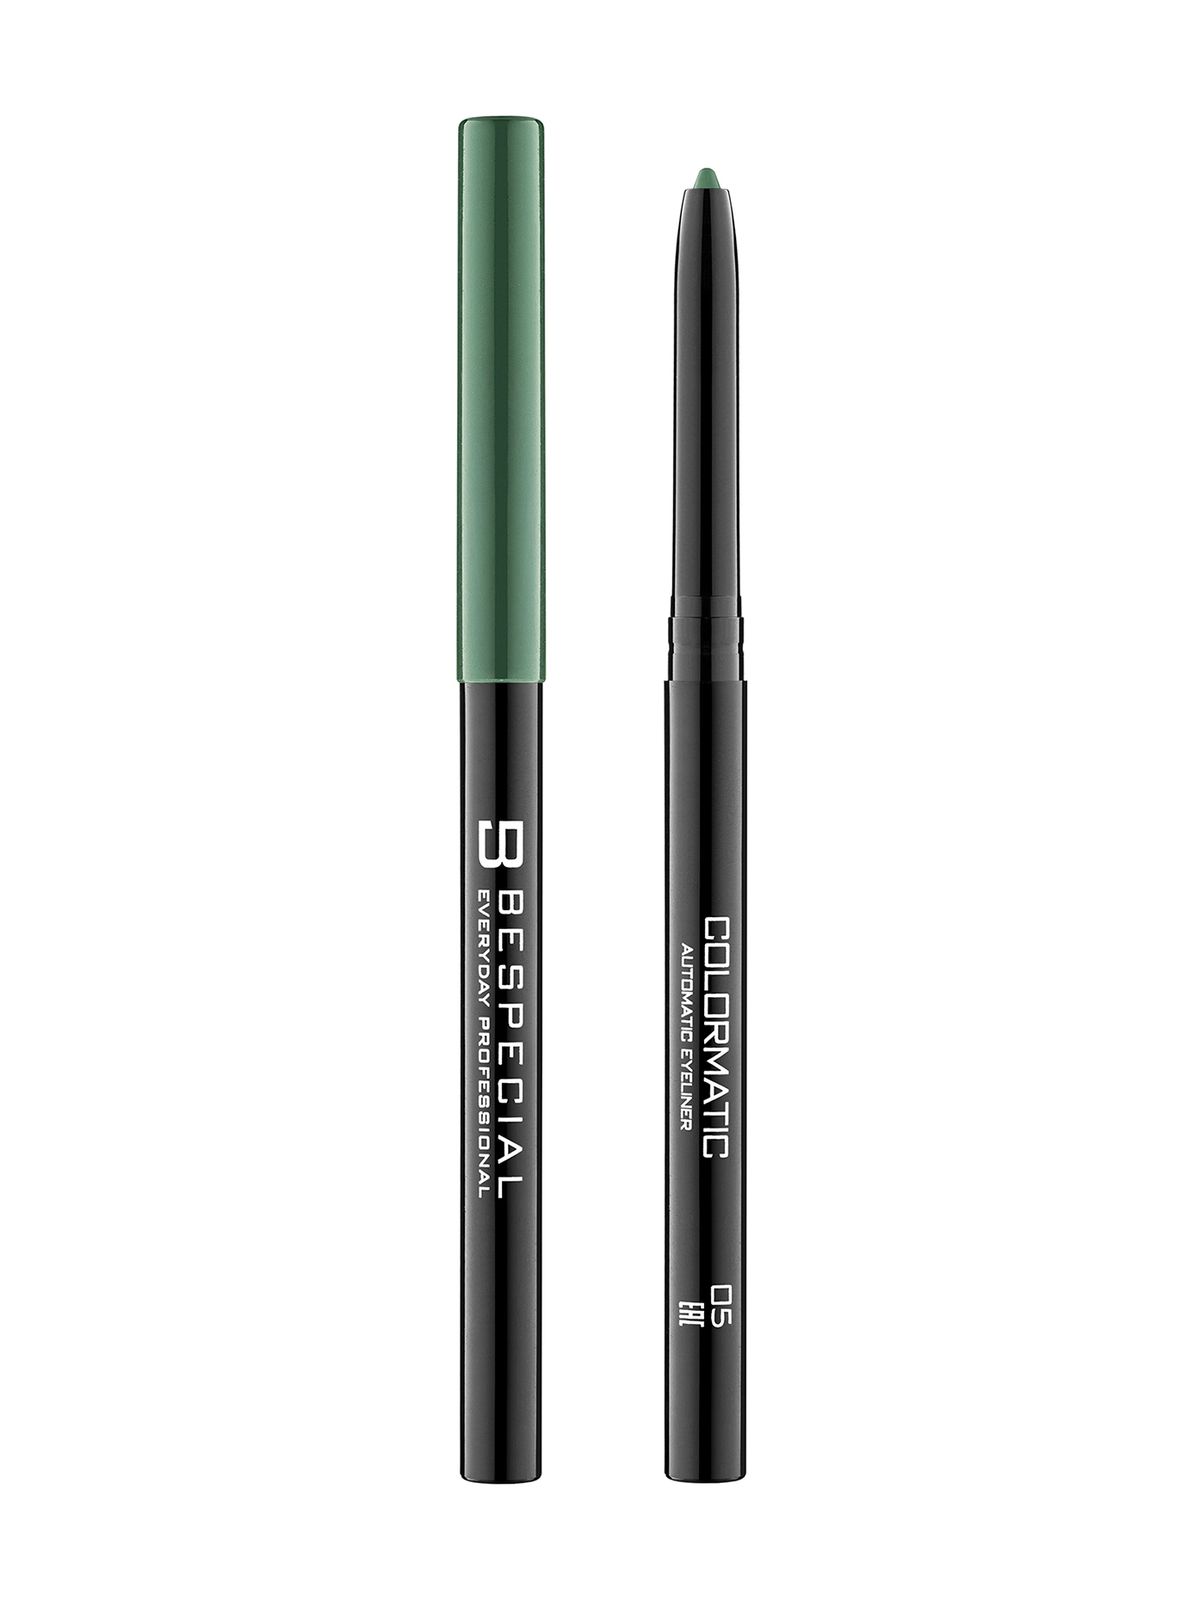 Механический карандаш для глаз Bespecial Colormatic Eye Pencil карандаш водостойкий для глаз posh 18 часов устойчивости тон е104 горчичный